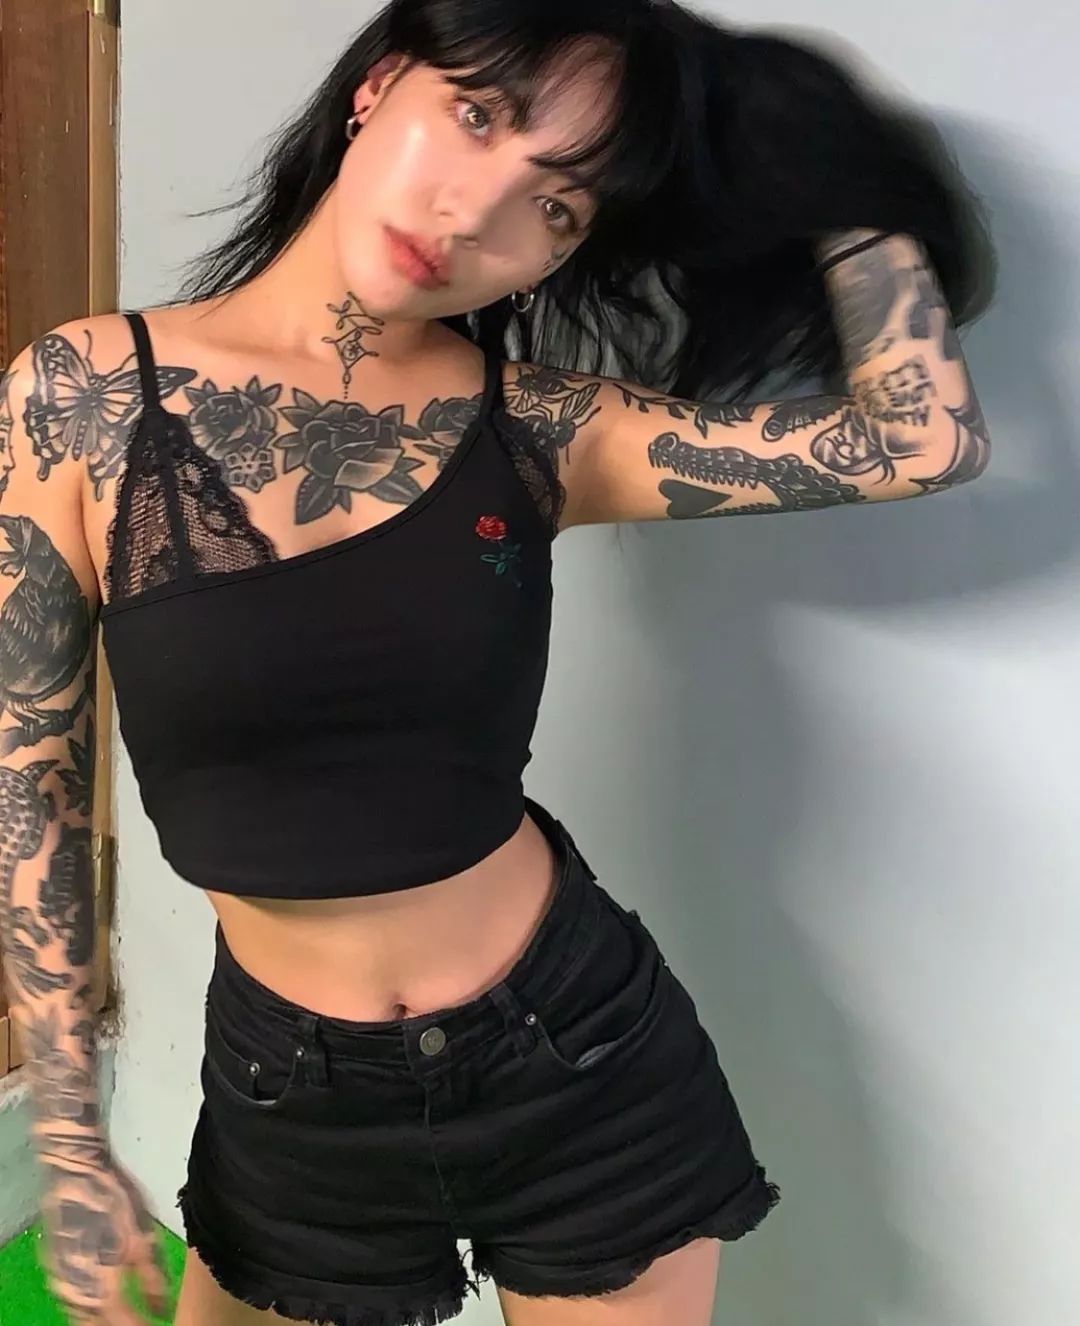 女纹身师为什么都是魔鬼身材?